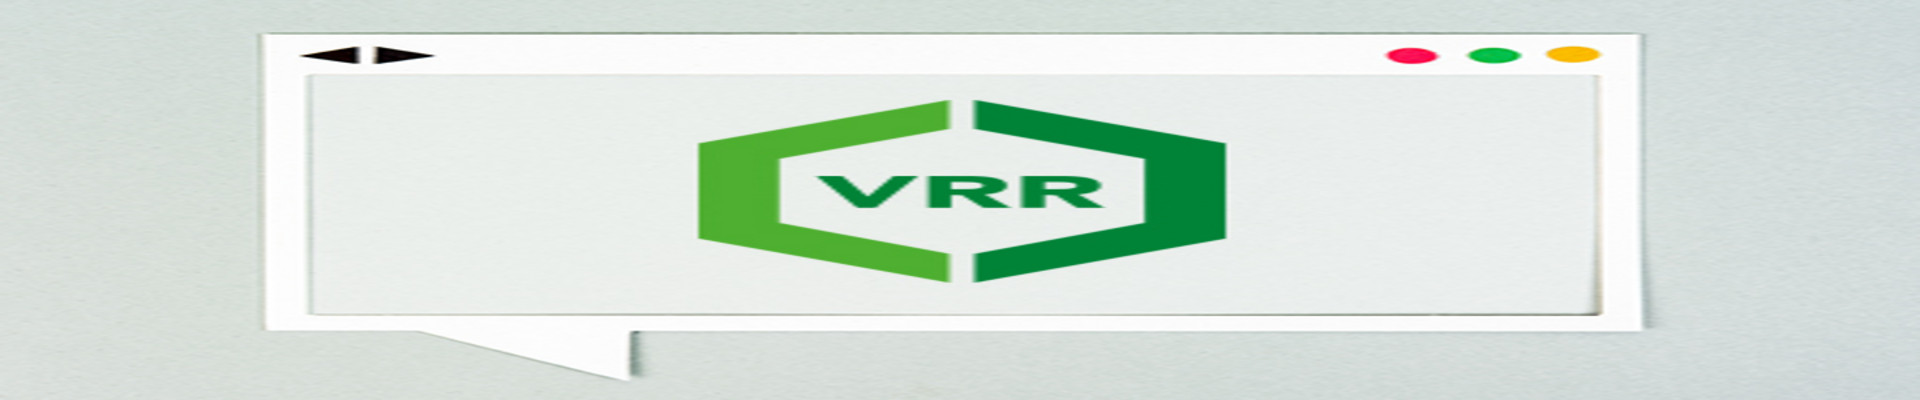 Das Logo des VRR, geöffnet in einem Web-Browser